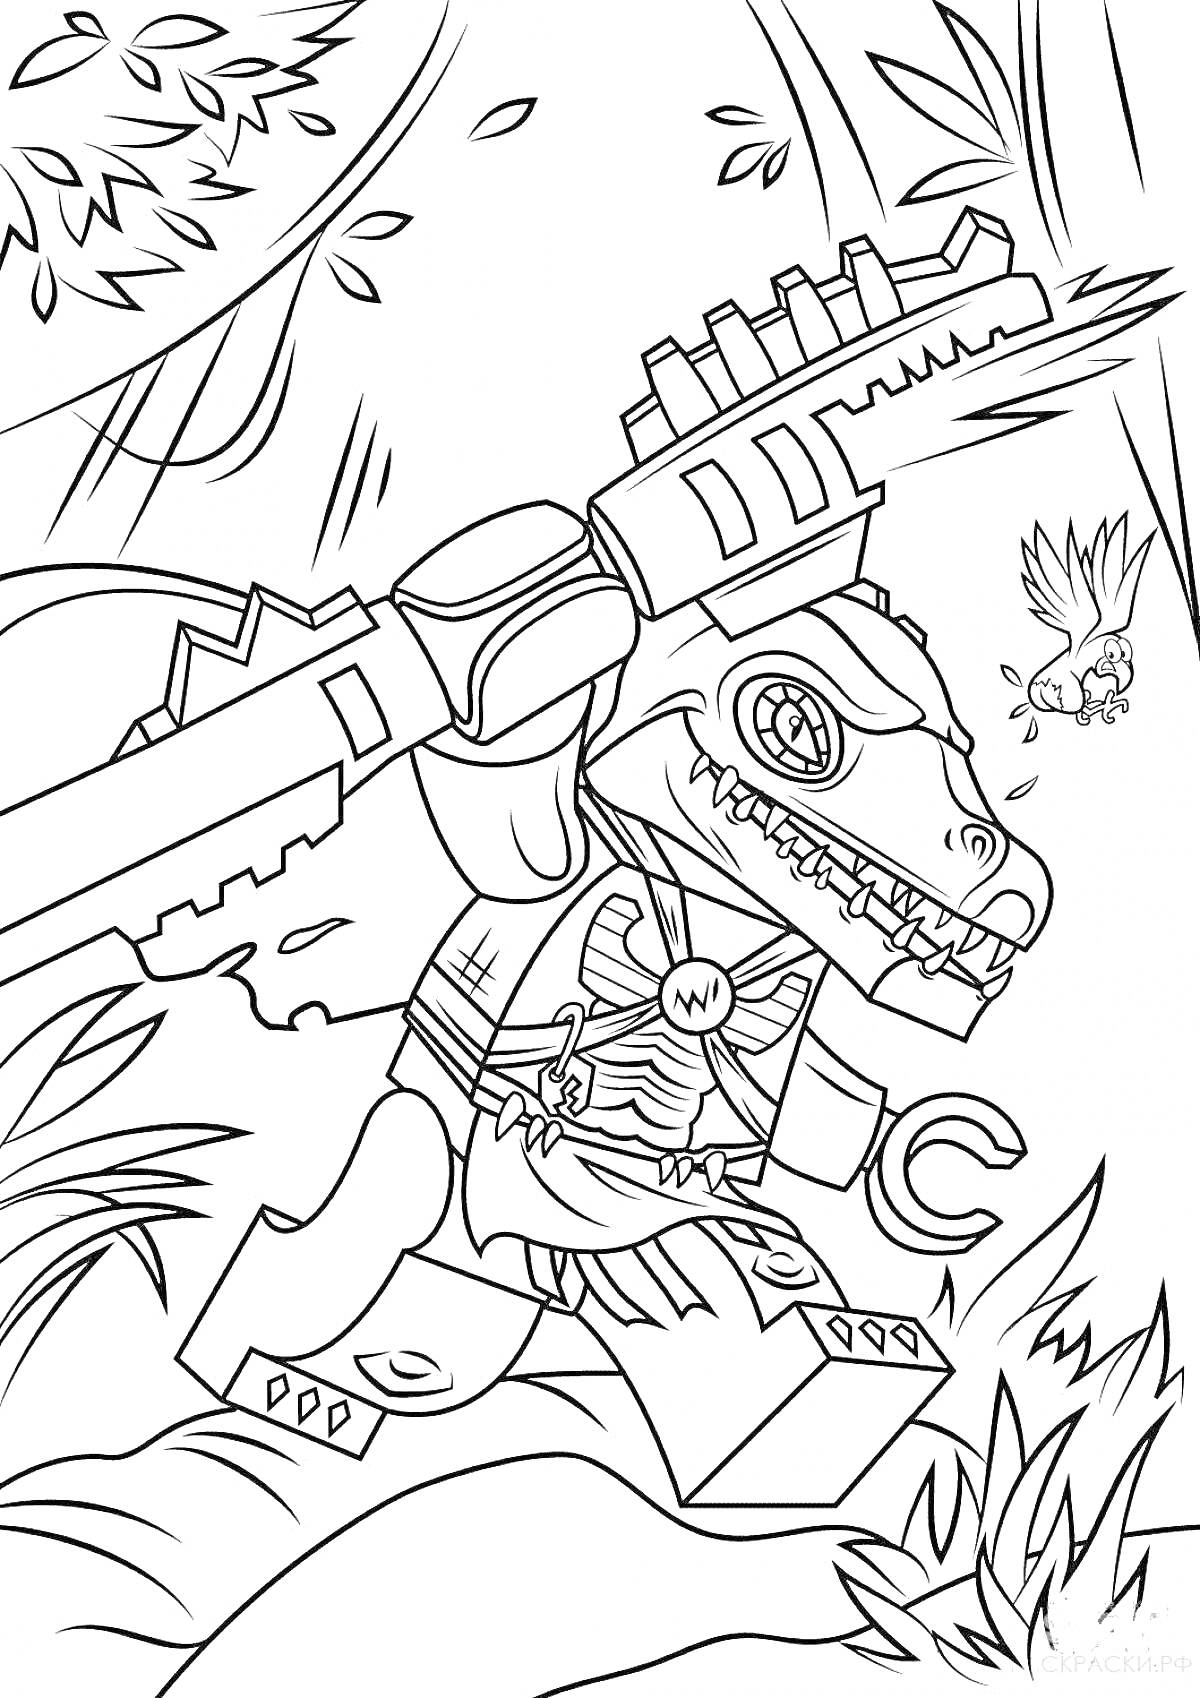 Раскраска Монкарт - лего-робот динозавр с огромным мечом в джунглях, бабочка